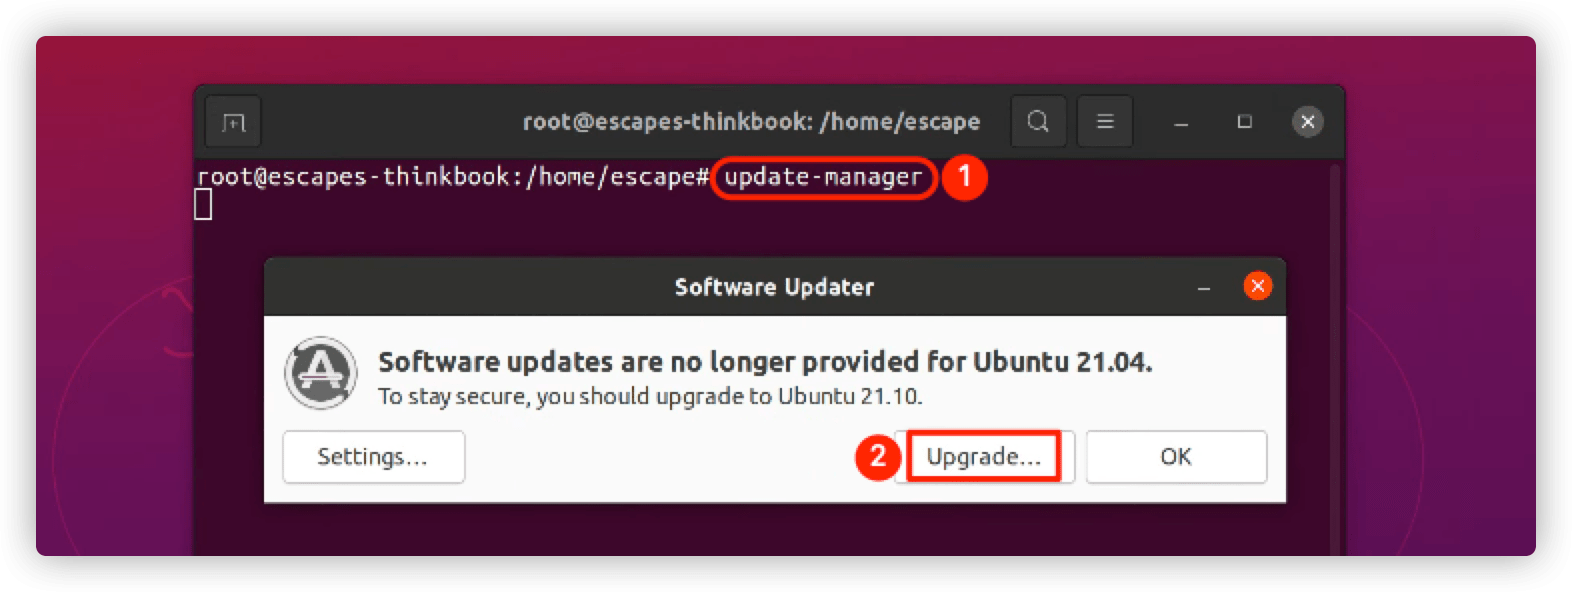 Ubuntu系统使用指南 - 命令行方式升级